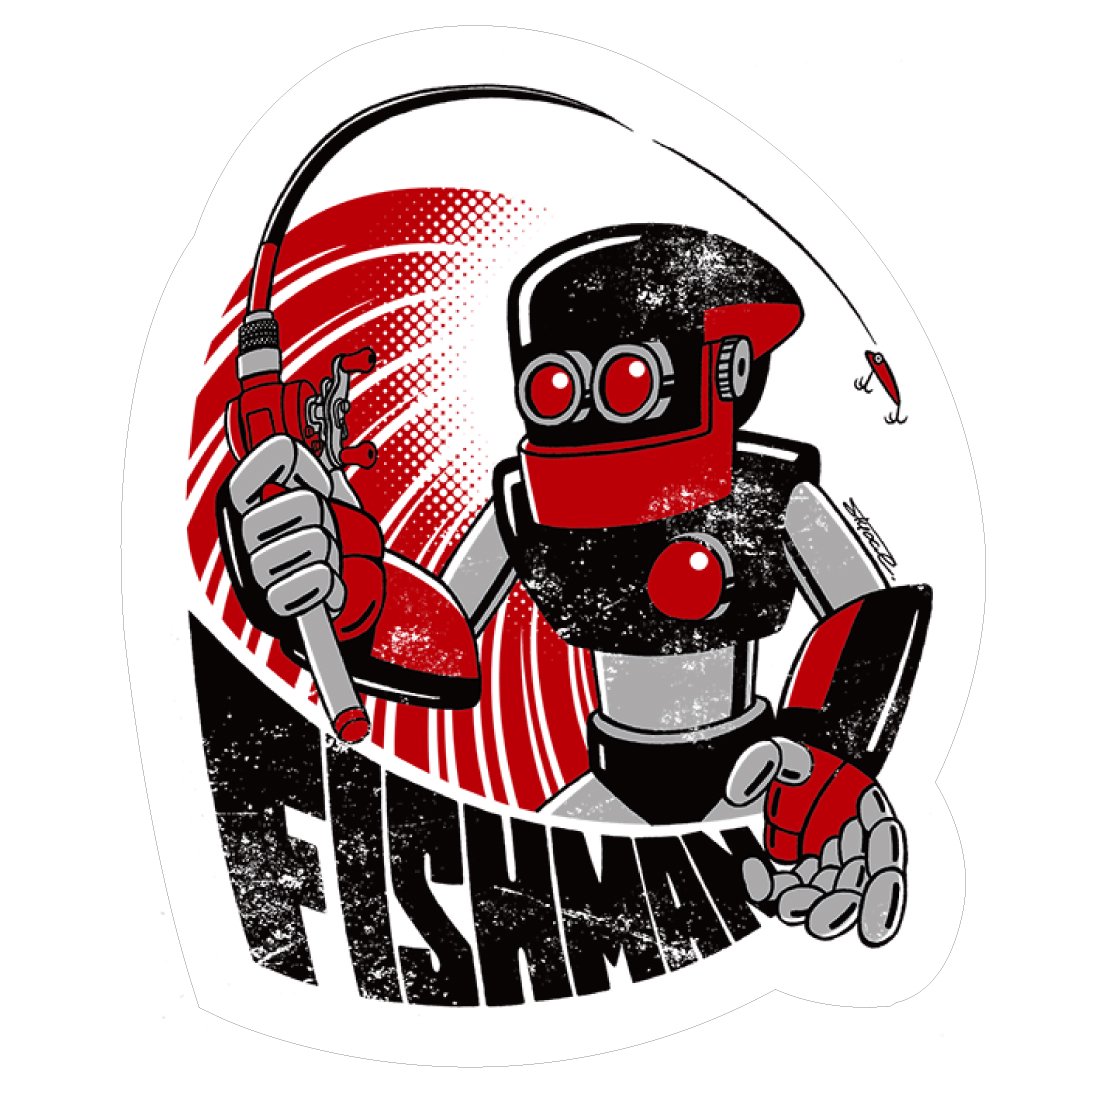 FLEX Robo Sticker (Fishman)